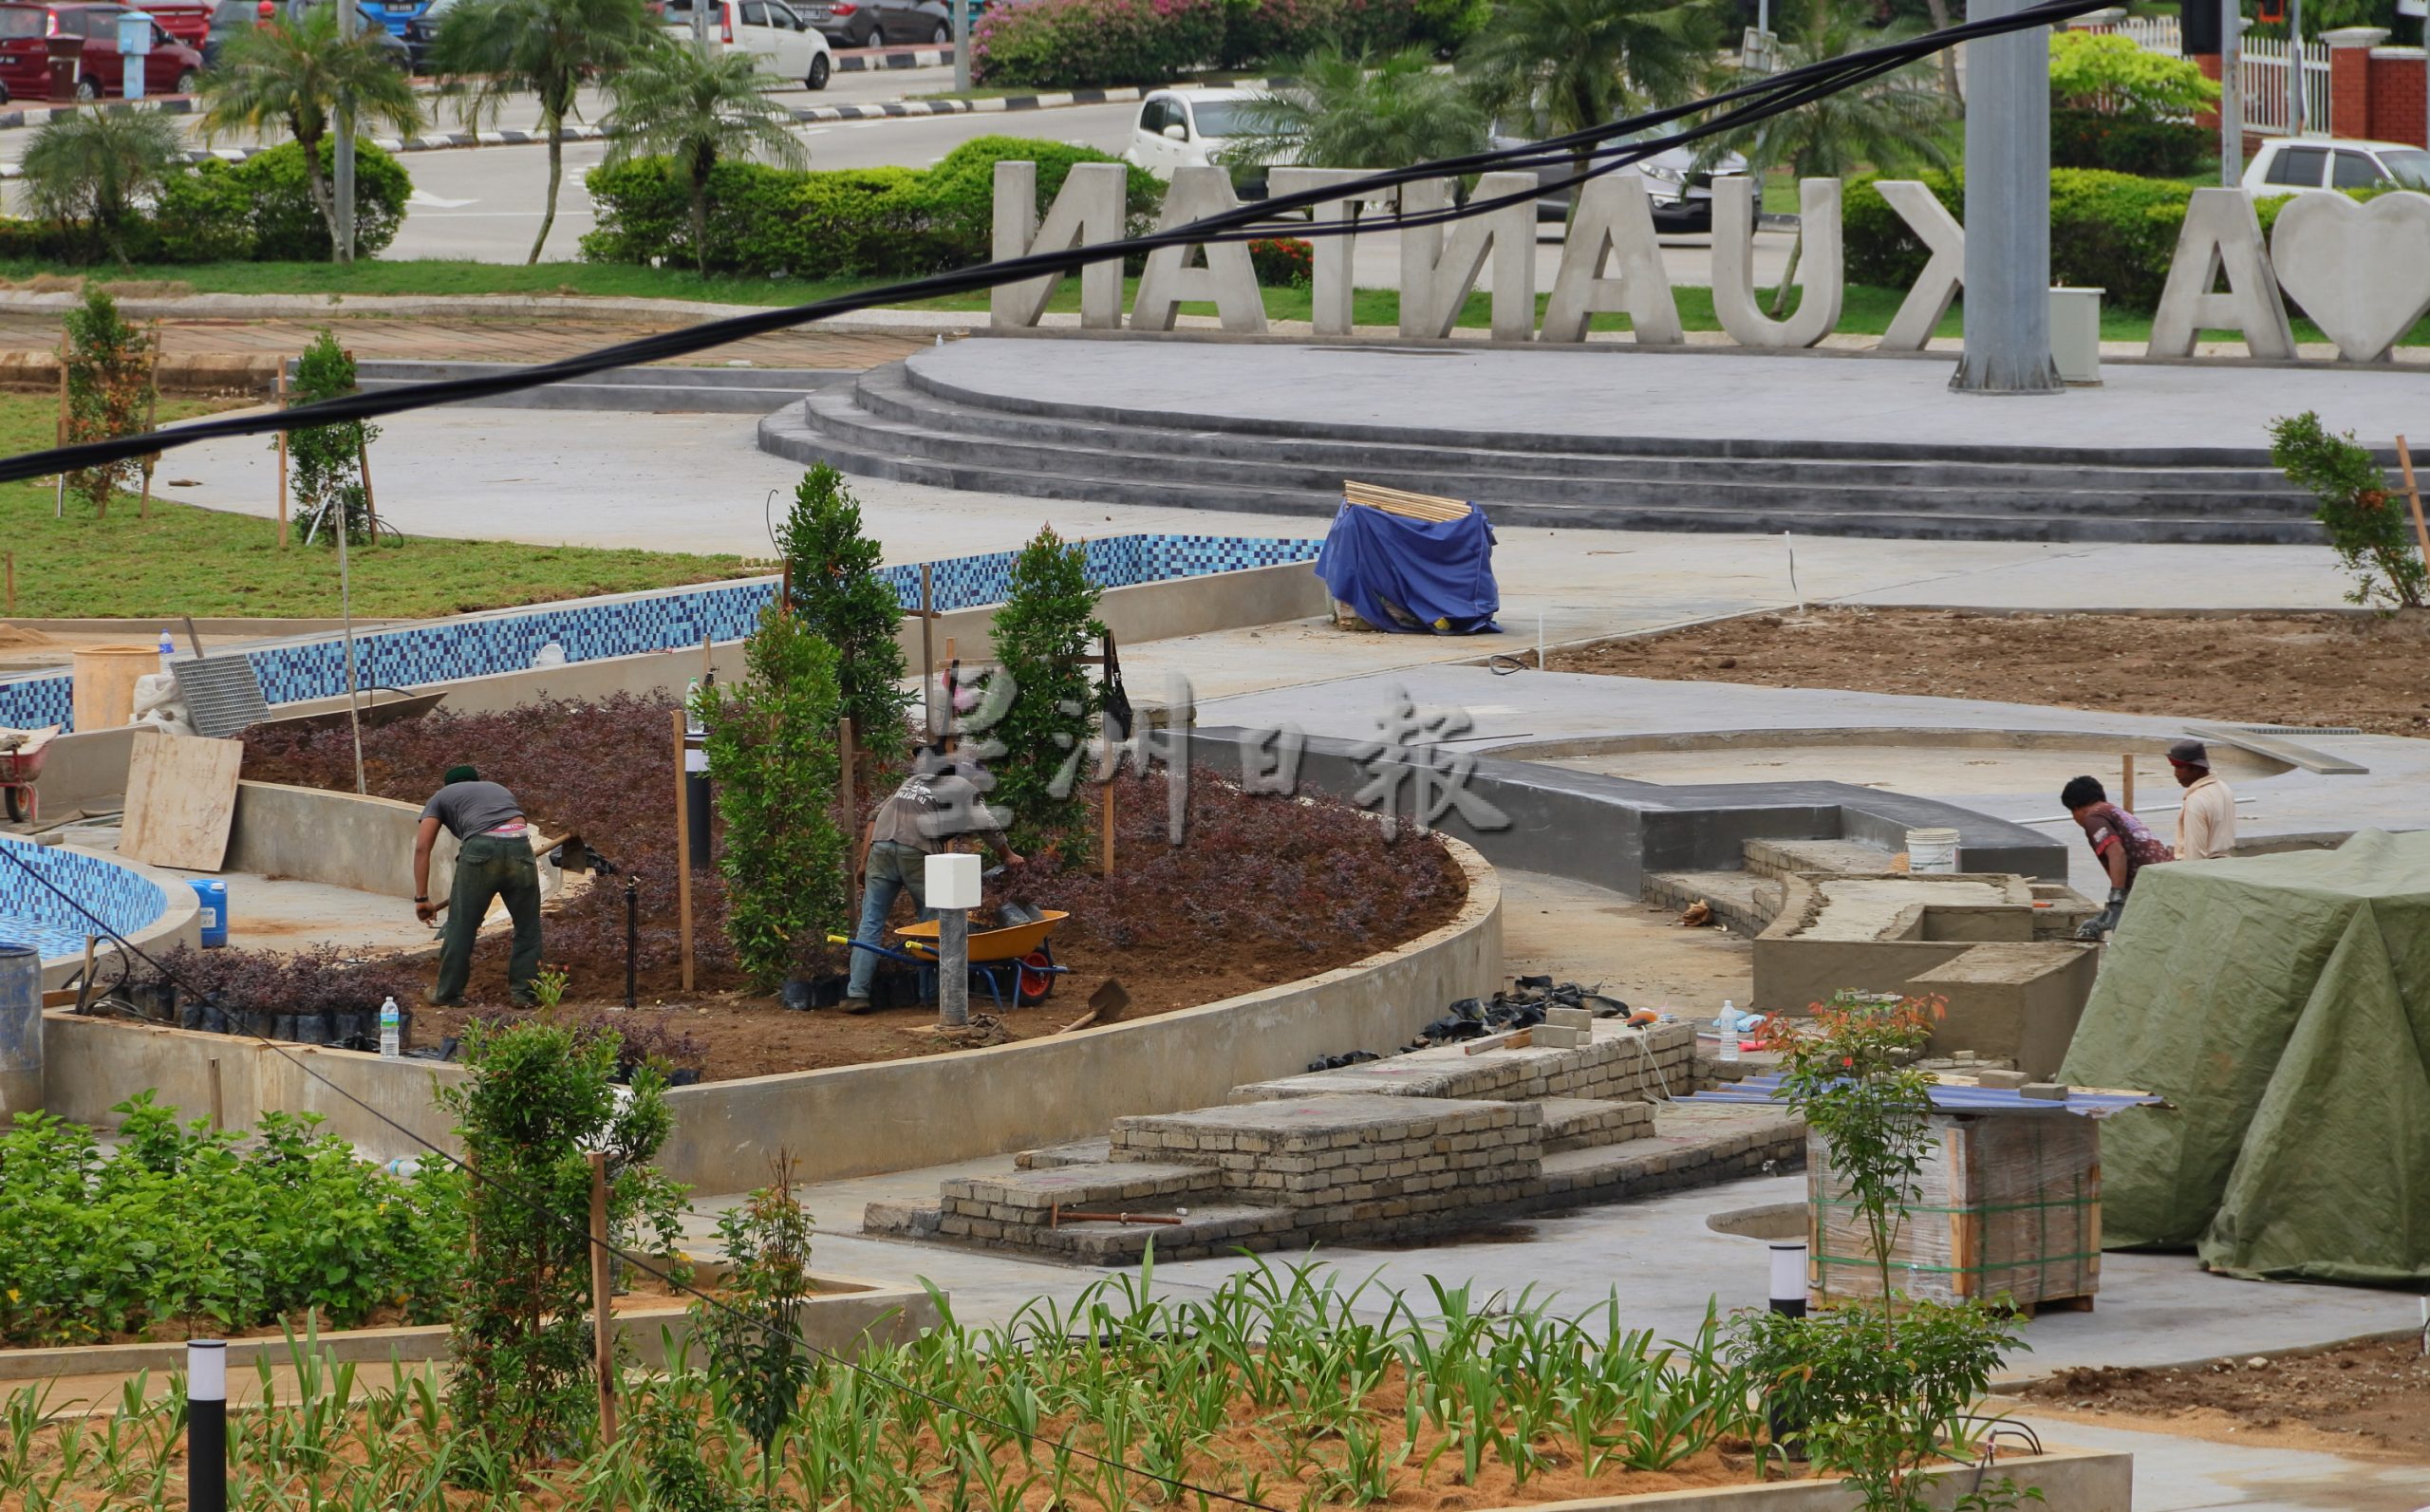 建喷泉增钟楼种植物 关丹MPK3草场变公园